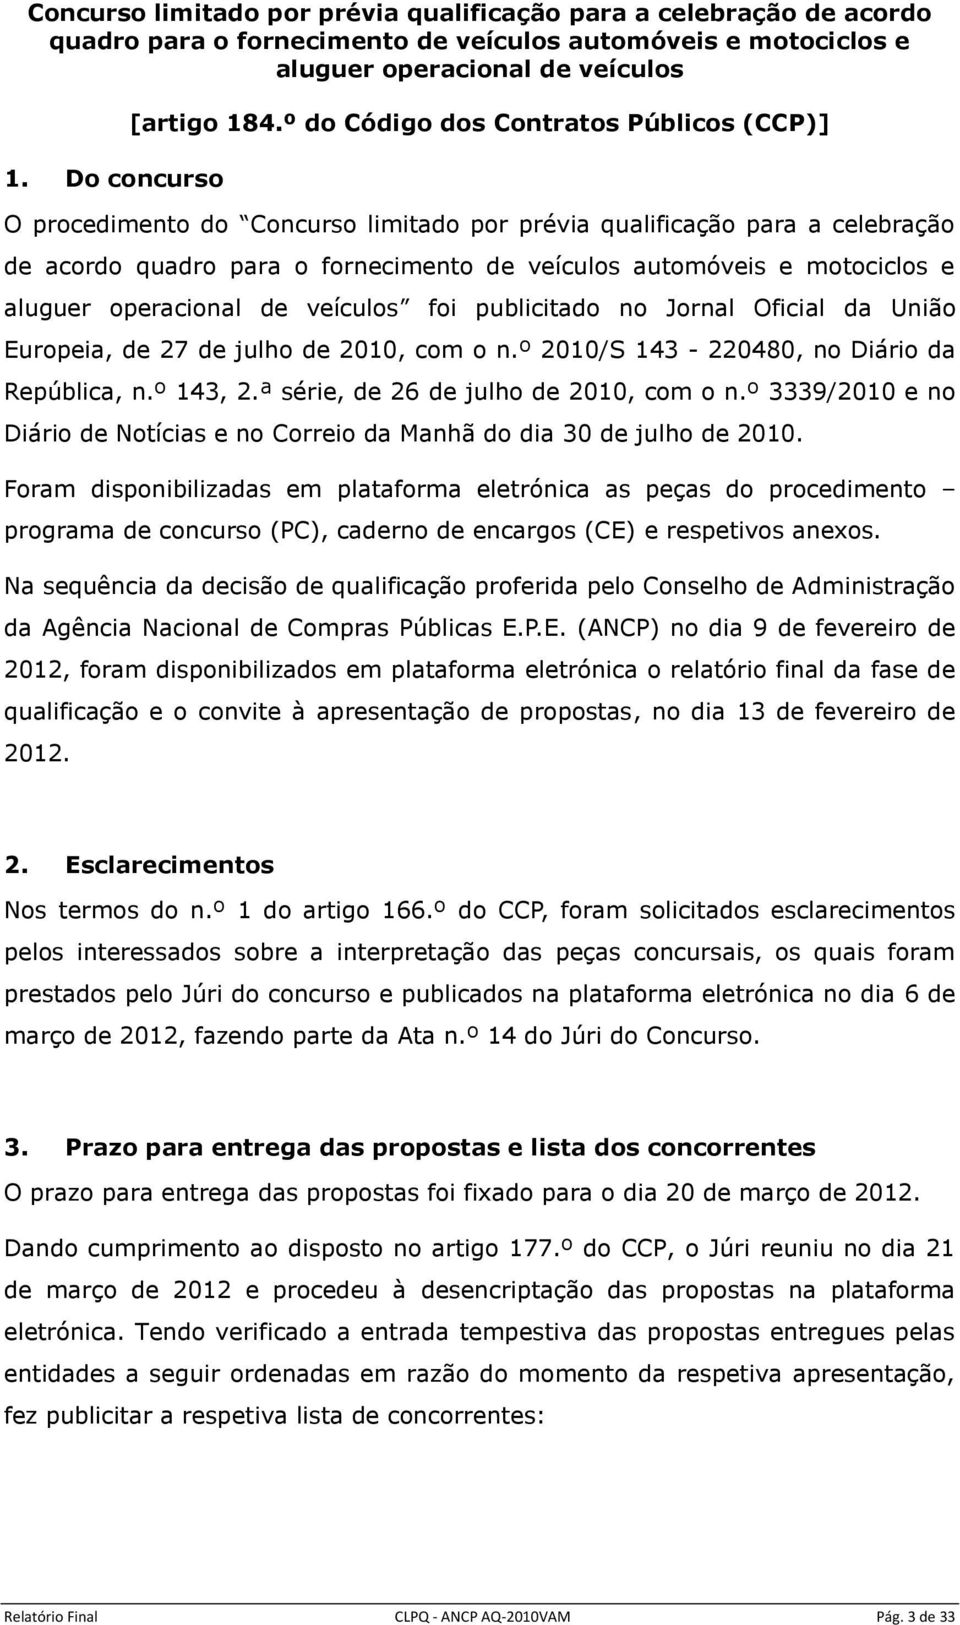 aluguer operacional de veículos foi publicitado no Jornal Oficial da União Europeia, de 27 de julho de 2010, com o 2010/S 143-220480, no Diário da República, 143, 2.